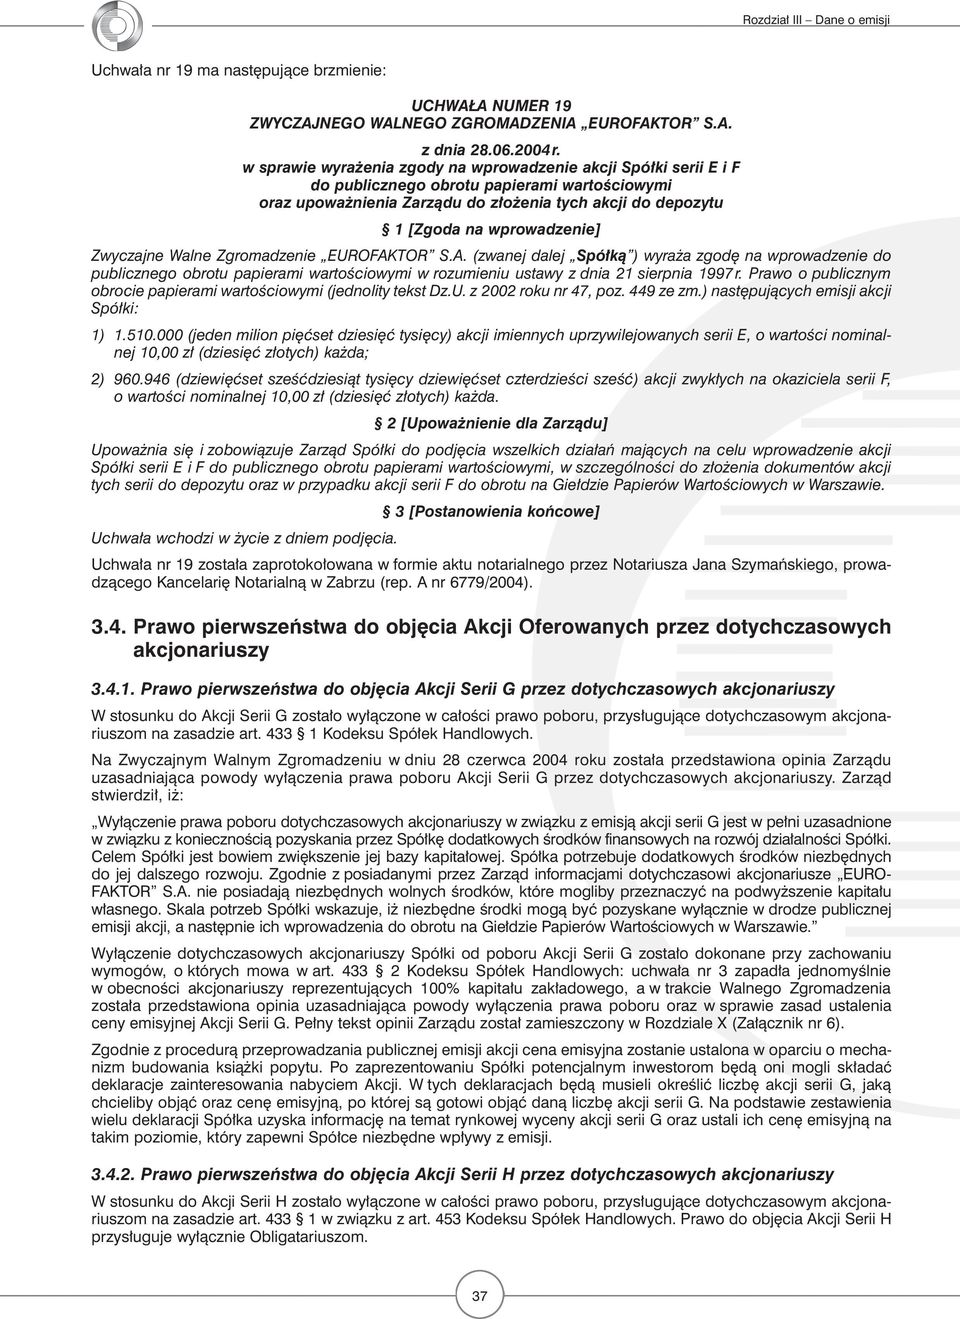 Zwyczajne Walne Zgromadzenie EUROFAKTOR S.A. (zwanej dalej Spółką ) wyraża zgodę na wprowadzenie do publicznego obrotu papierami wartościowymi w rozumieniu ustawy z dnia 21 sierpnia 1997 r.